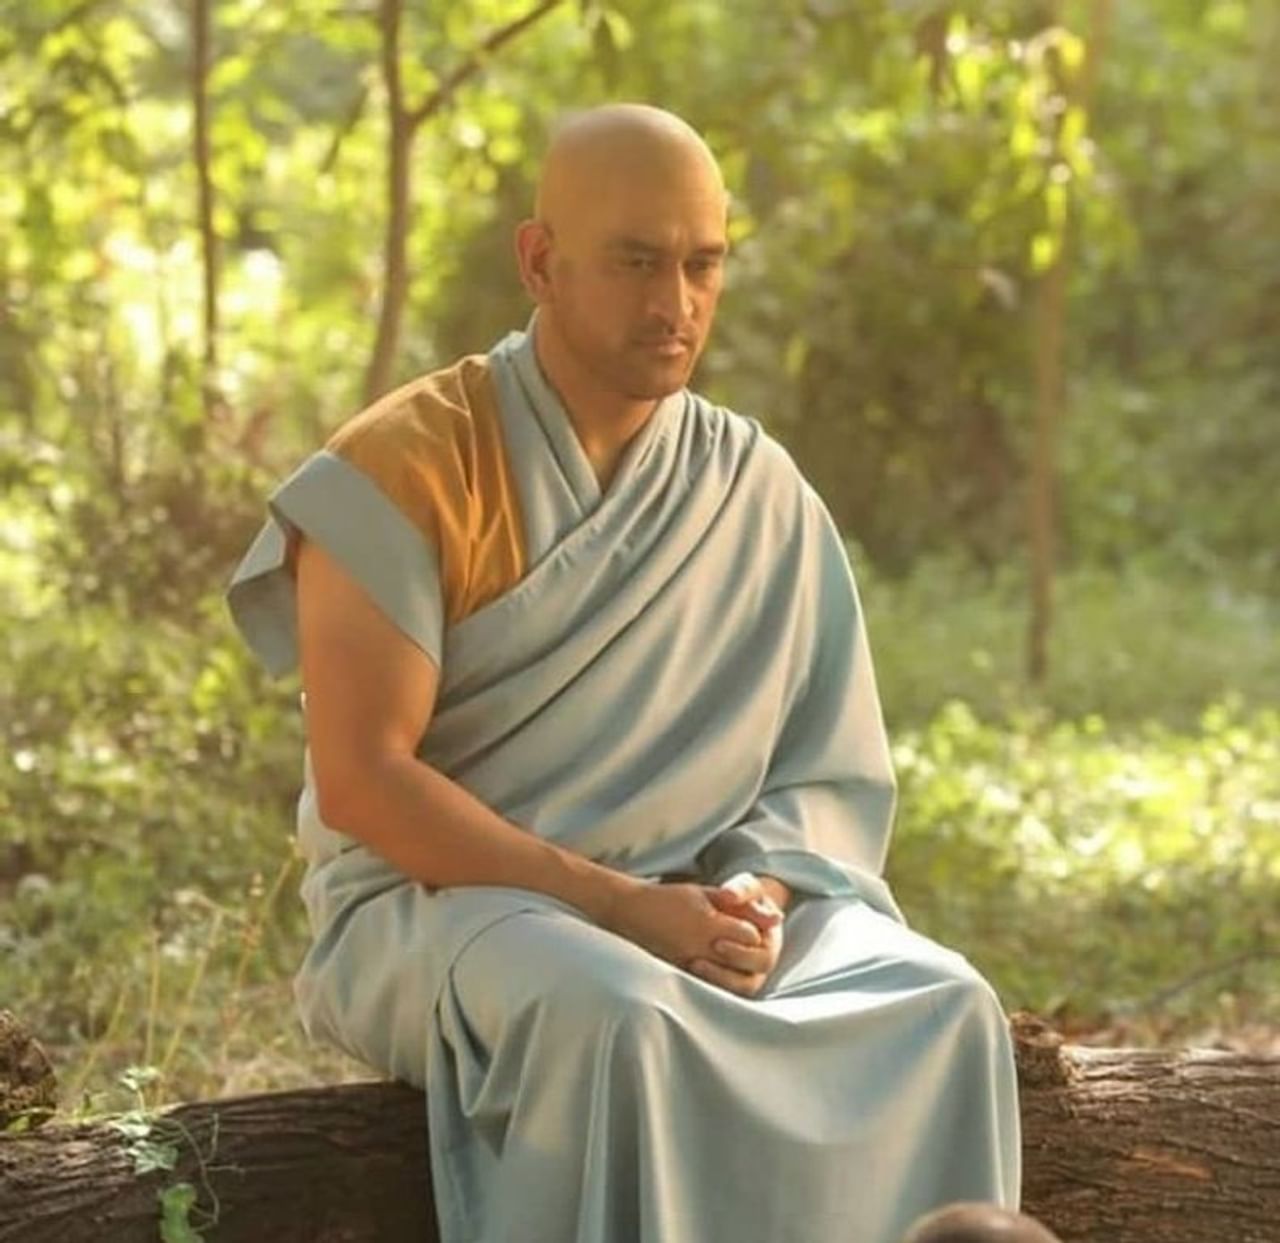 મહેન્દ્રસિંહ ધોની (Mahendra Singh Dhoni)નો નવો લુક વાયરલ થવાને લઈને ફેન્સ ચોંકી ઉઠ્યા છે. ધોની નવા લુકમાં બૌદ્ધ (Buddhist) ભિક્ષુકના ડ્રેસીંગમાં જોવા મળી રહ્યો છે. જોકે તેના ડ્રેસિંગ કરતા તેના મુંડન વાળા ચહેરાથી વધારે આશ્વર્ય ચાહકોને થયુ છે. IPL 2021 પહેલા જ તેનો આ નવો અવતાર સામે આવ્યો છે. જોકે તેણે હકીકતમાં મુંડન કરાવ્યુ છે કે કેમ તેનો કોઈ જ ખુલાસો કરવામાં આવ્યો નથી. 